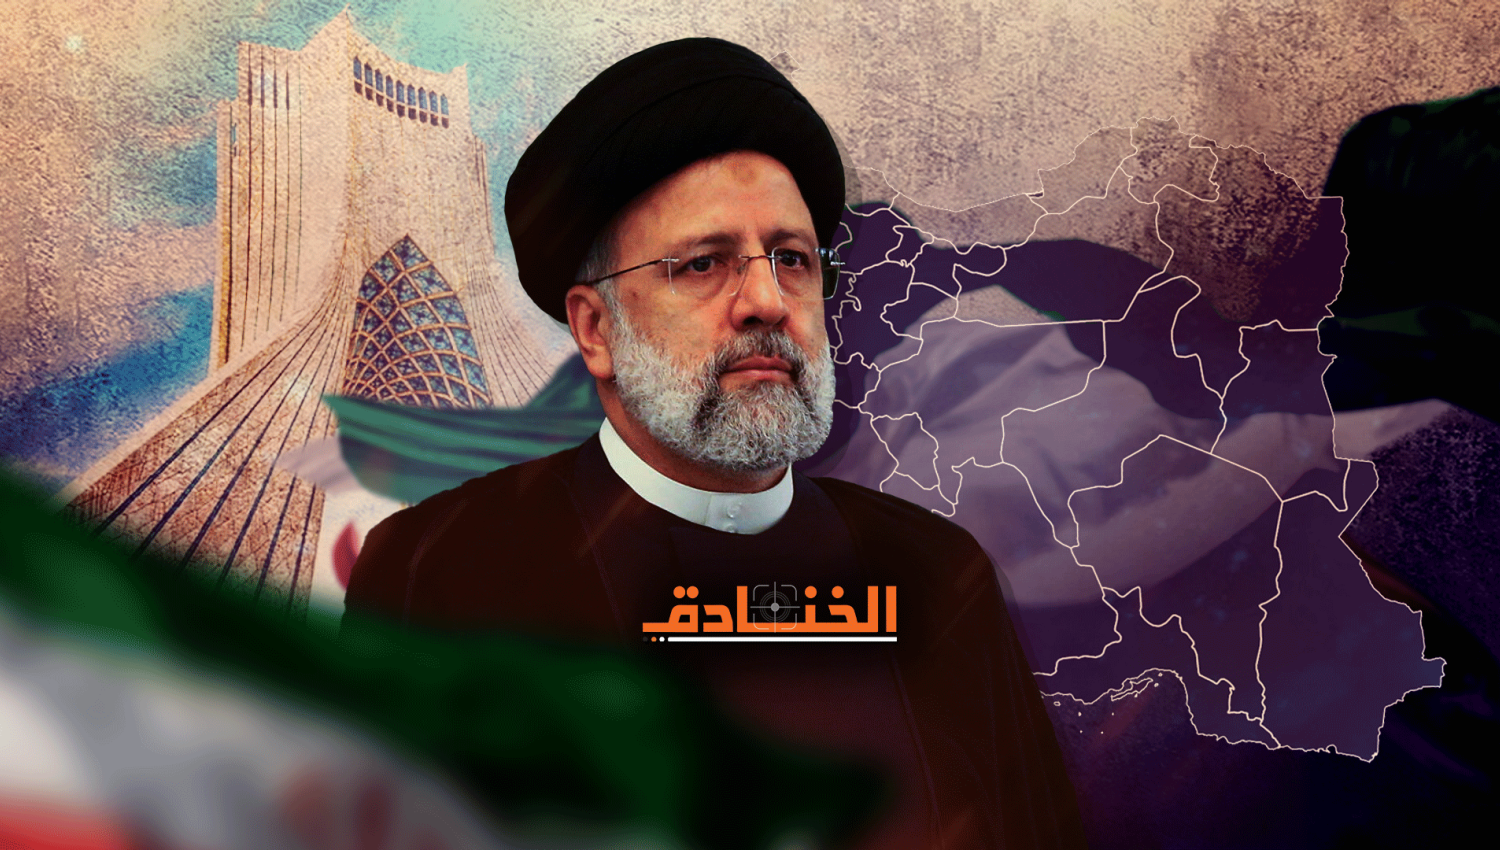 إنجازات حكومة السيد رئيسي أحد أهم أسباب الأحداث الأخيرة في إيران